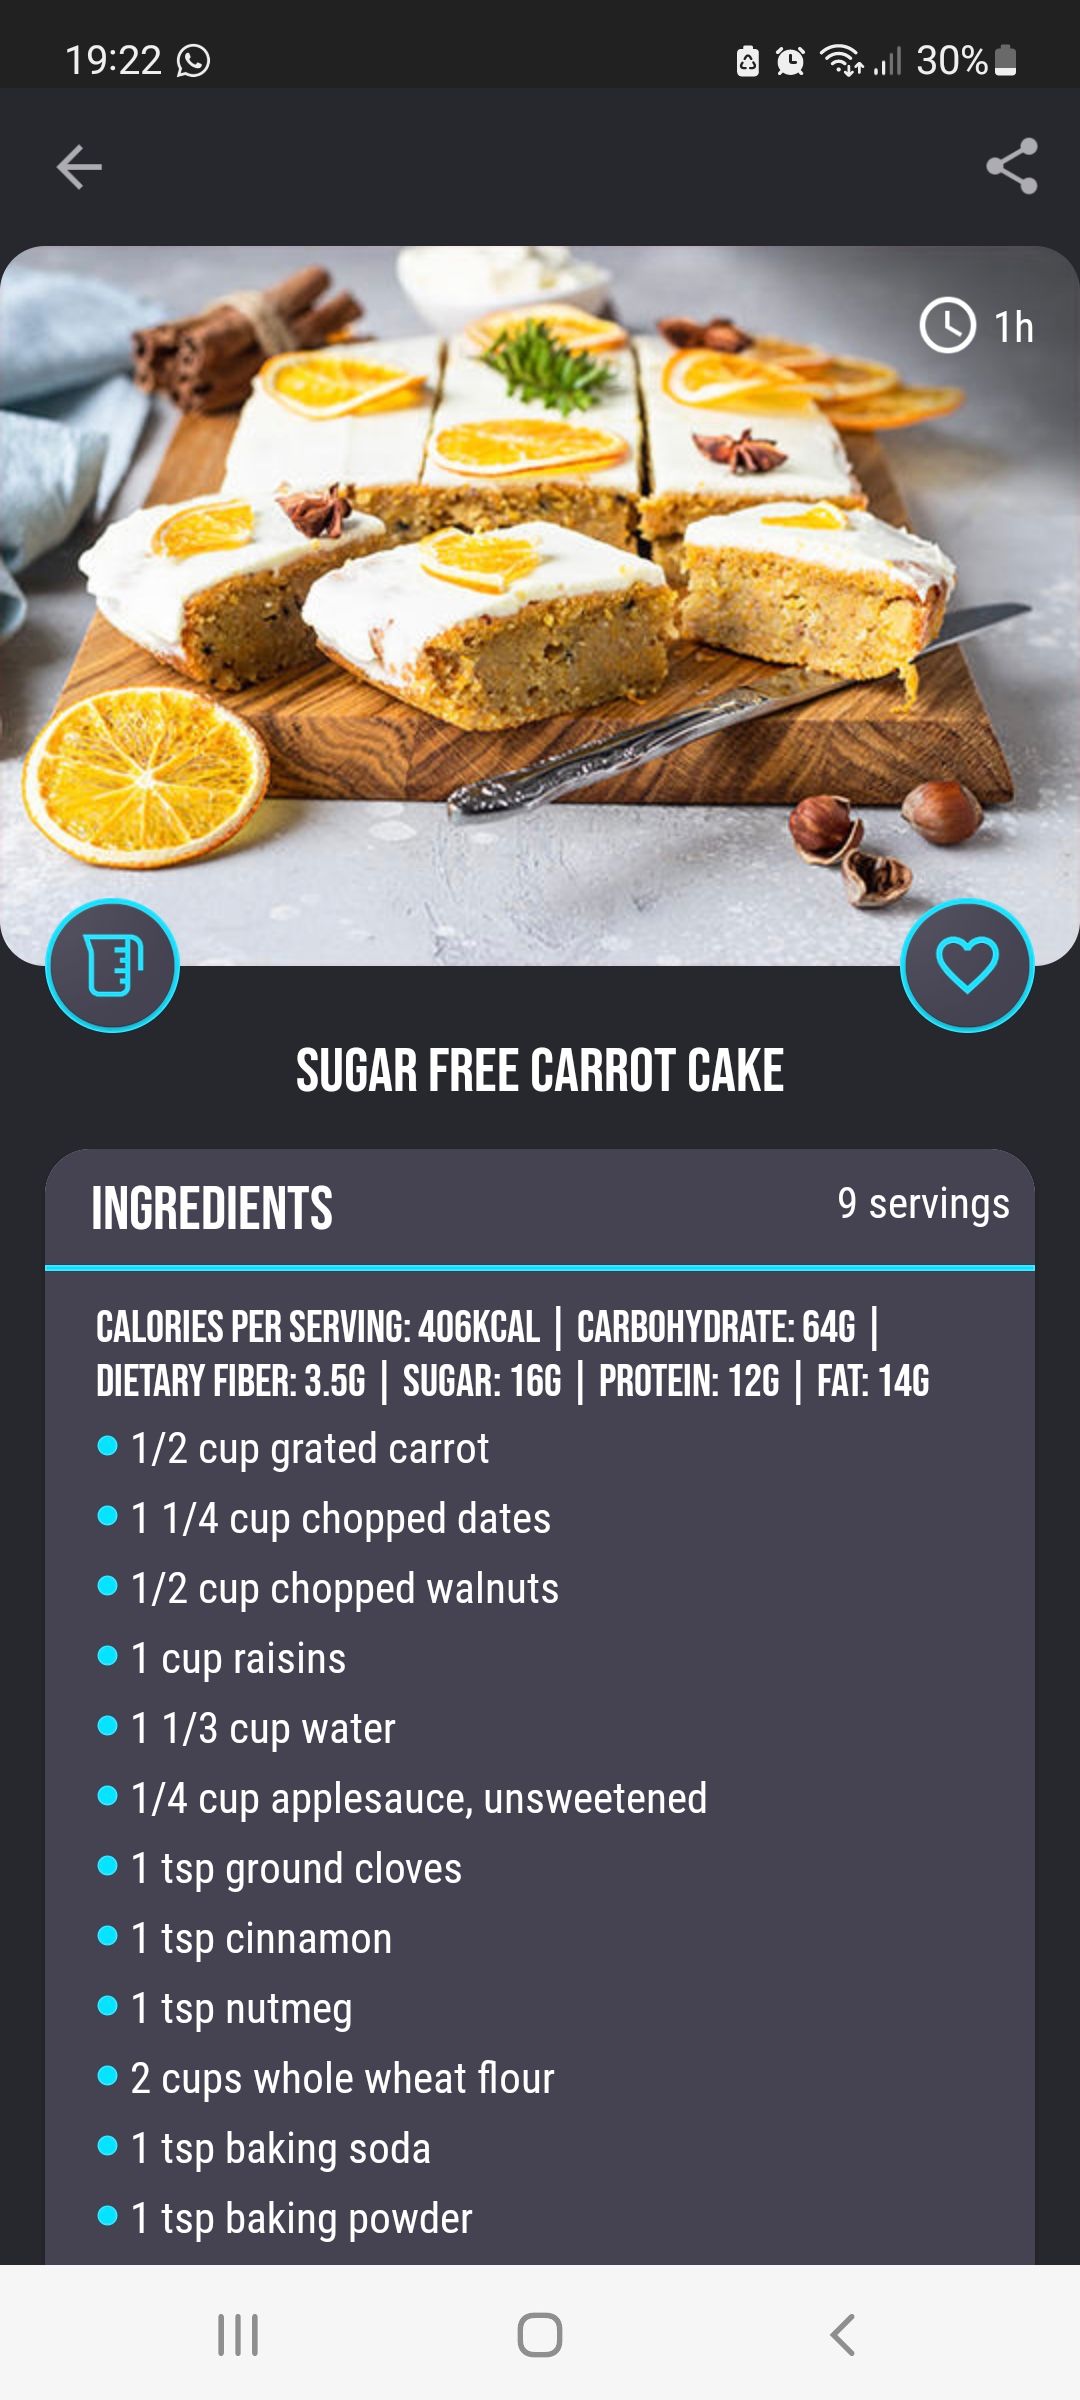 Sugar-free Dessert Recipes app carrot cake